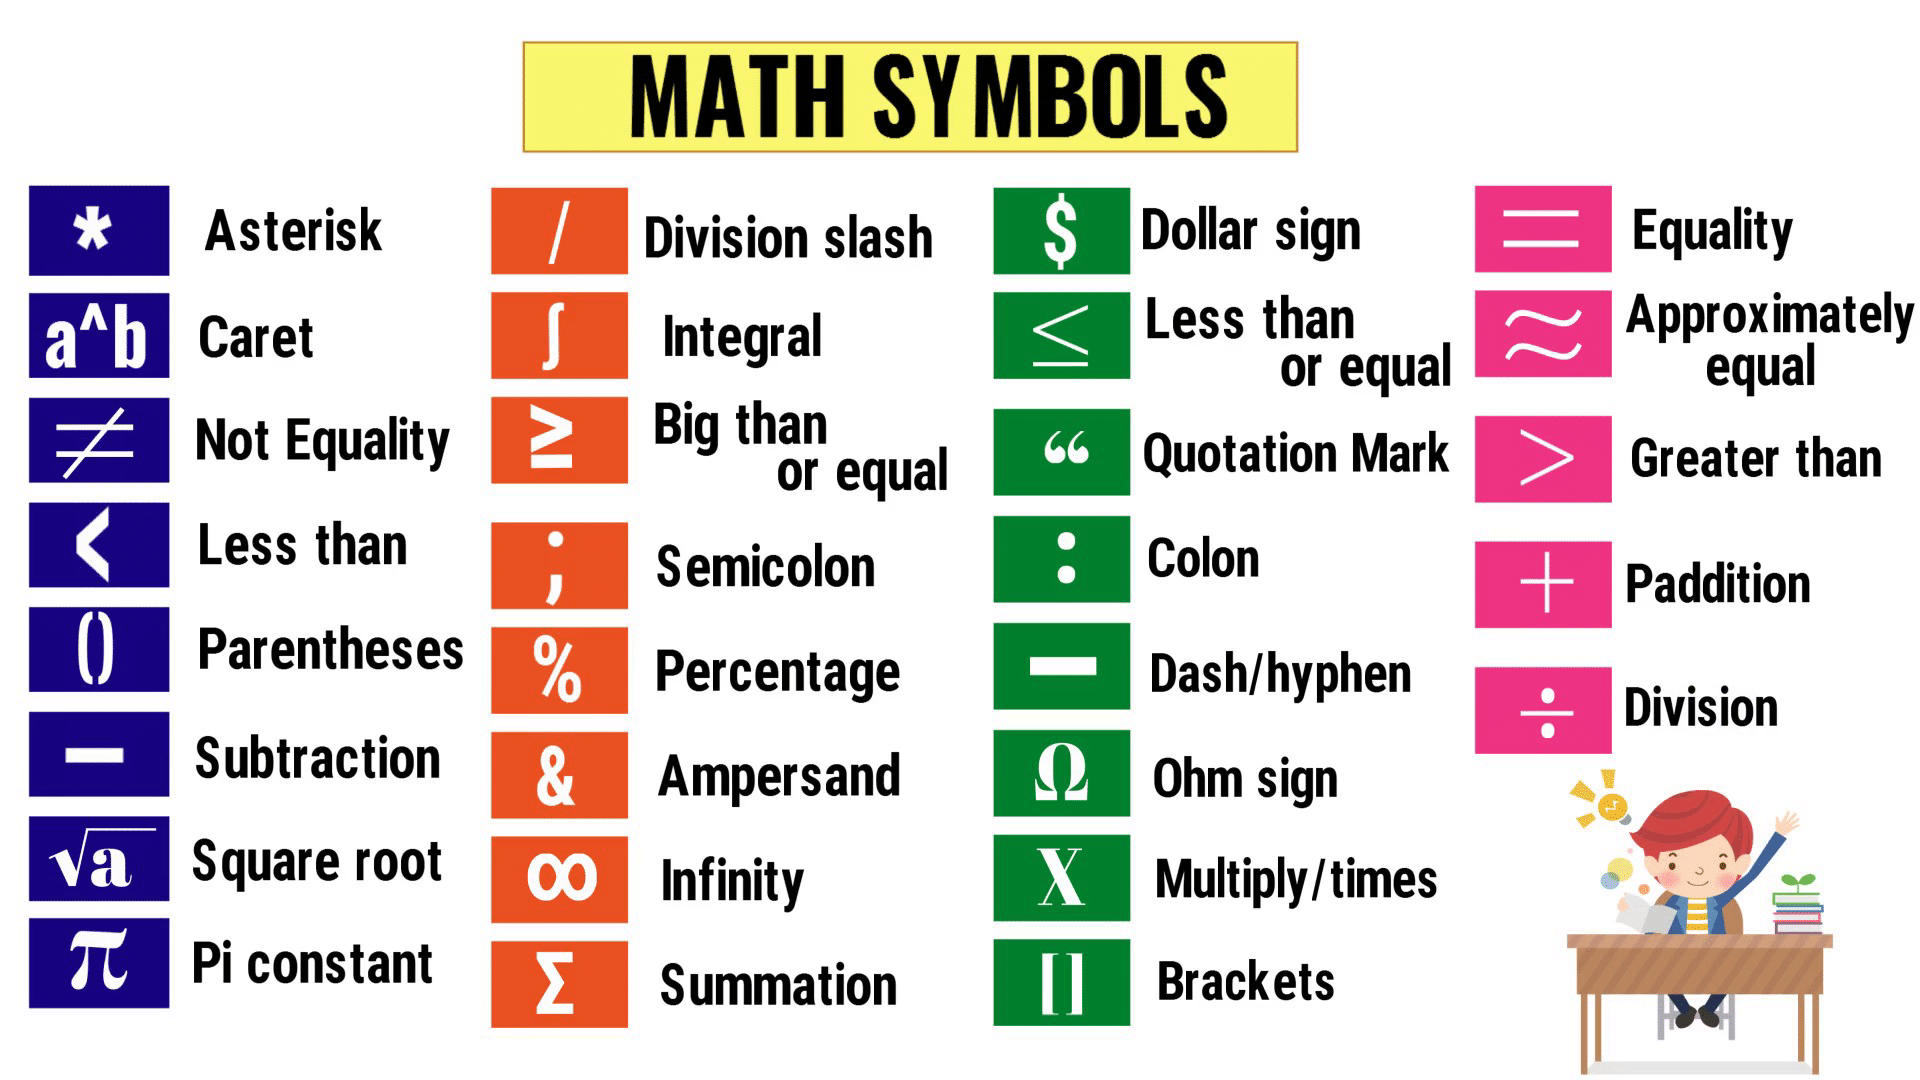 Why Does Ed Sheeran Use Math Symbols